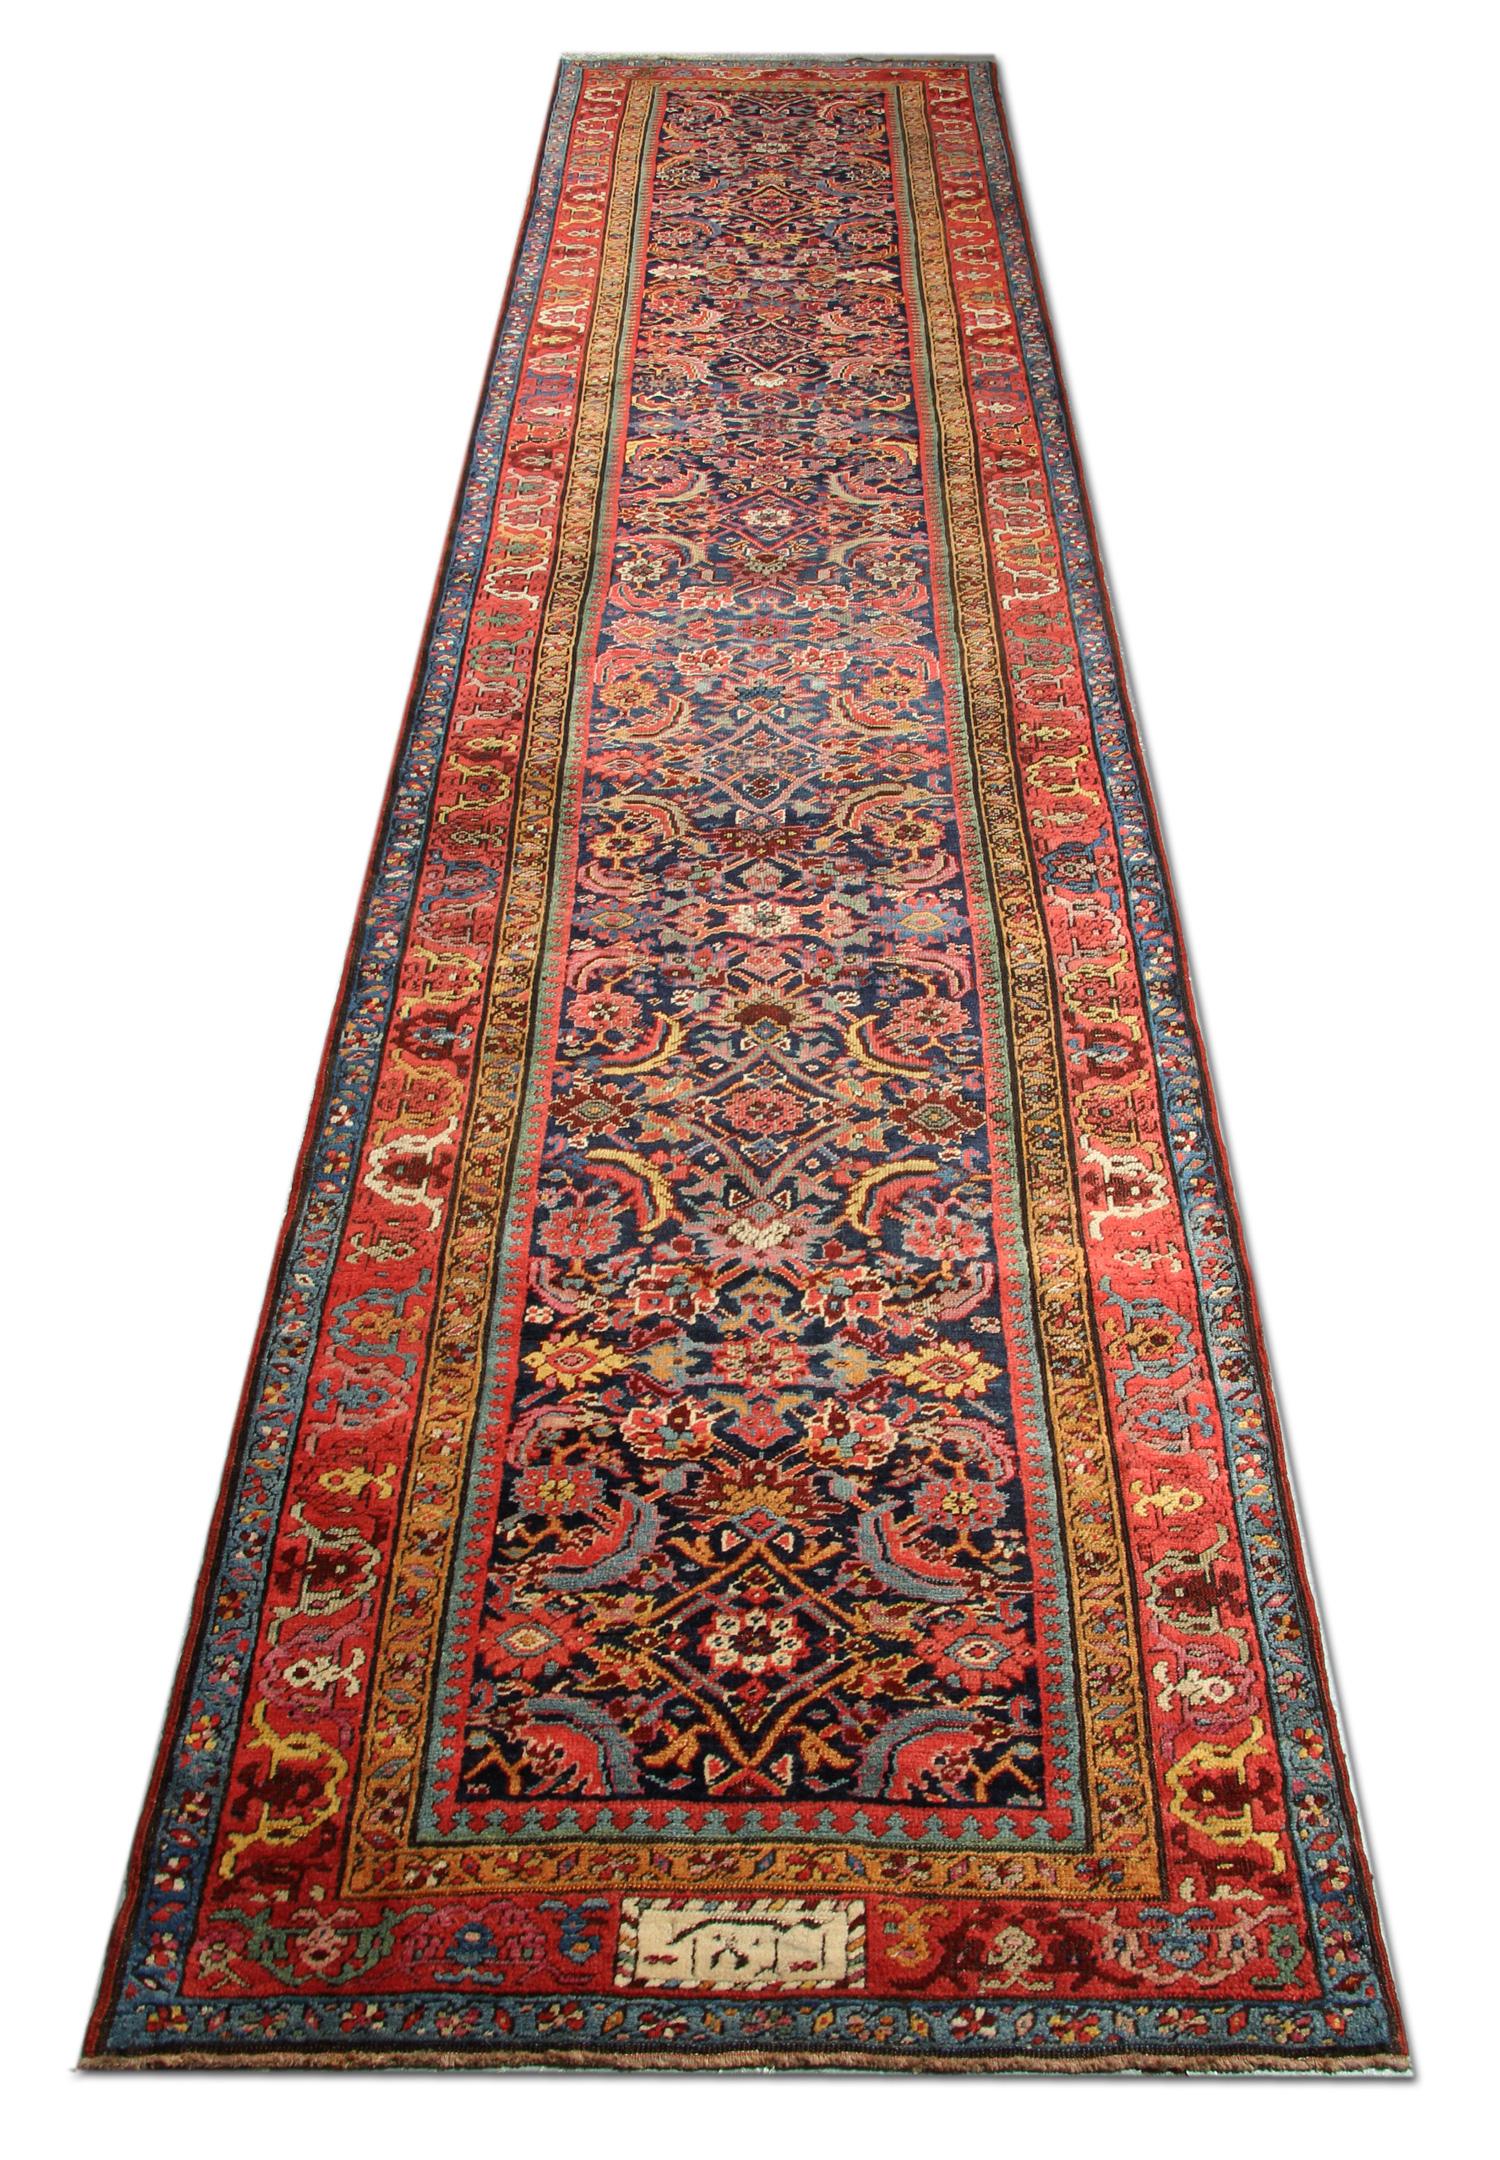 Country Rare Antique Rug Caucasian Runner, Living Room Rugs Stair Runner Handmade Carpet For Sale